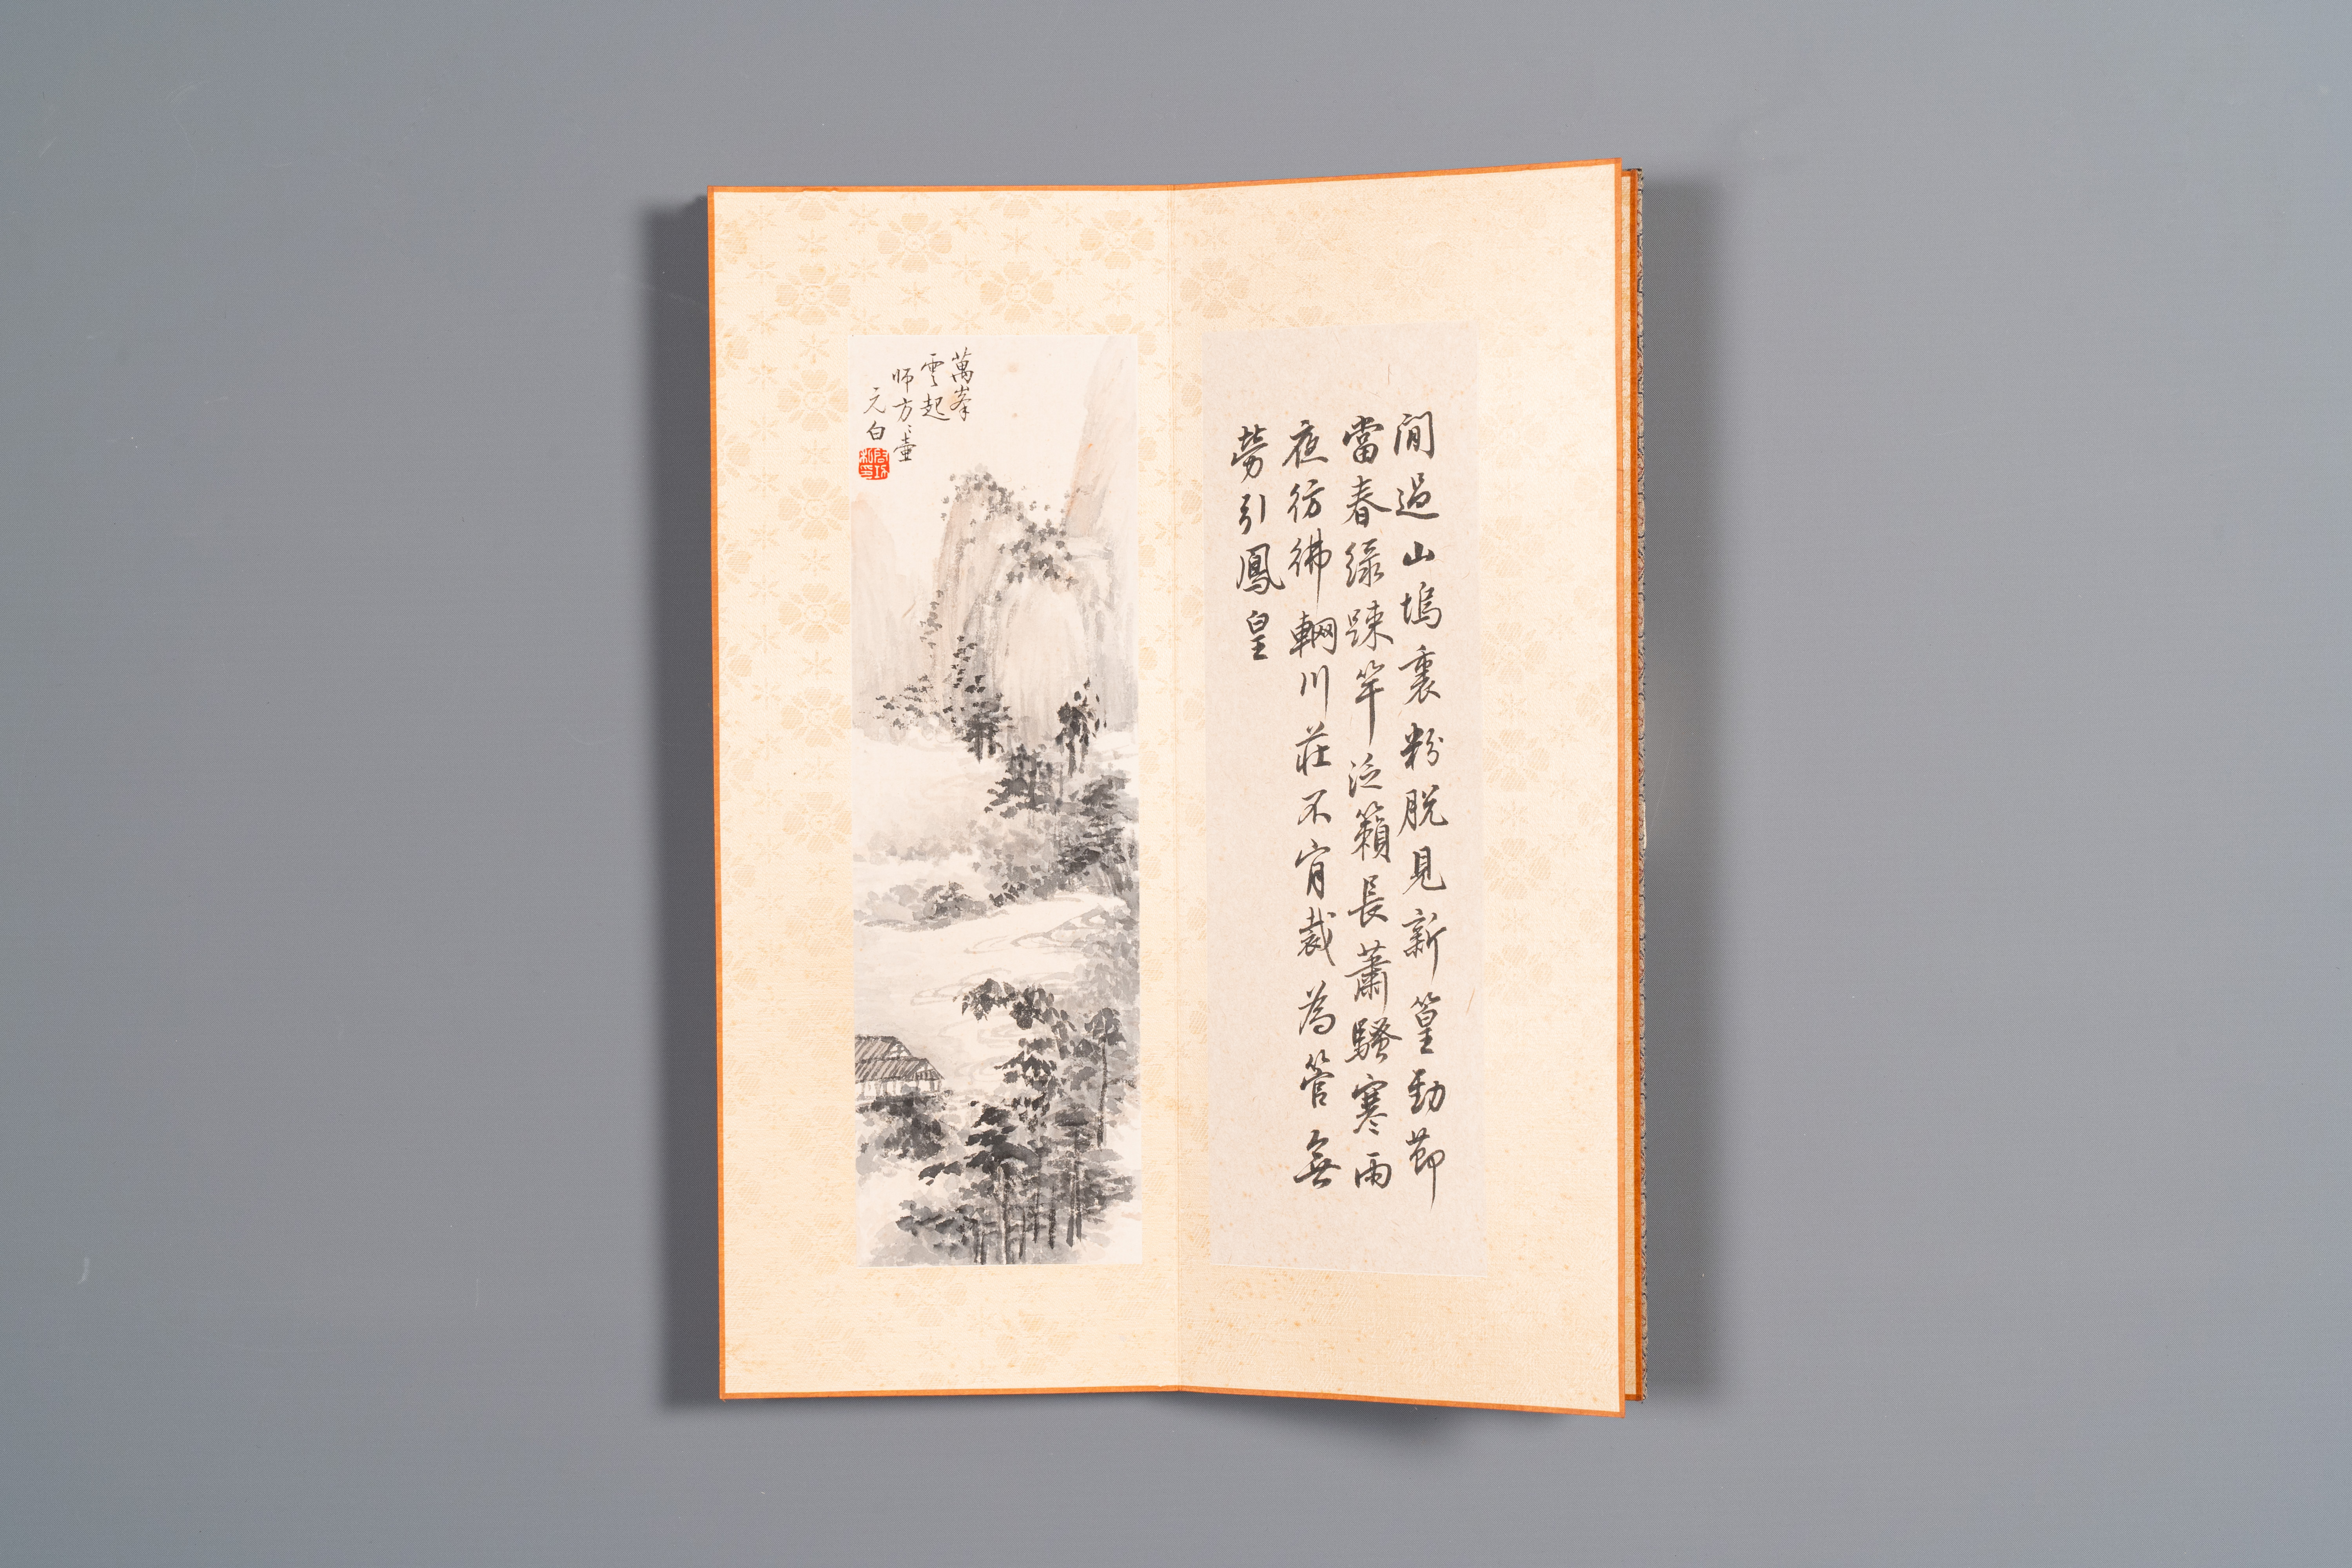 Three albums: 'Jiang Hanting æ±Ÿå¯’æ±€ (1904-1963), Lin Sanzhi æž—æ•£ä¹‹ (1898-1989) and Qi Gong å¯ - Image 20 of 23